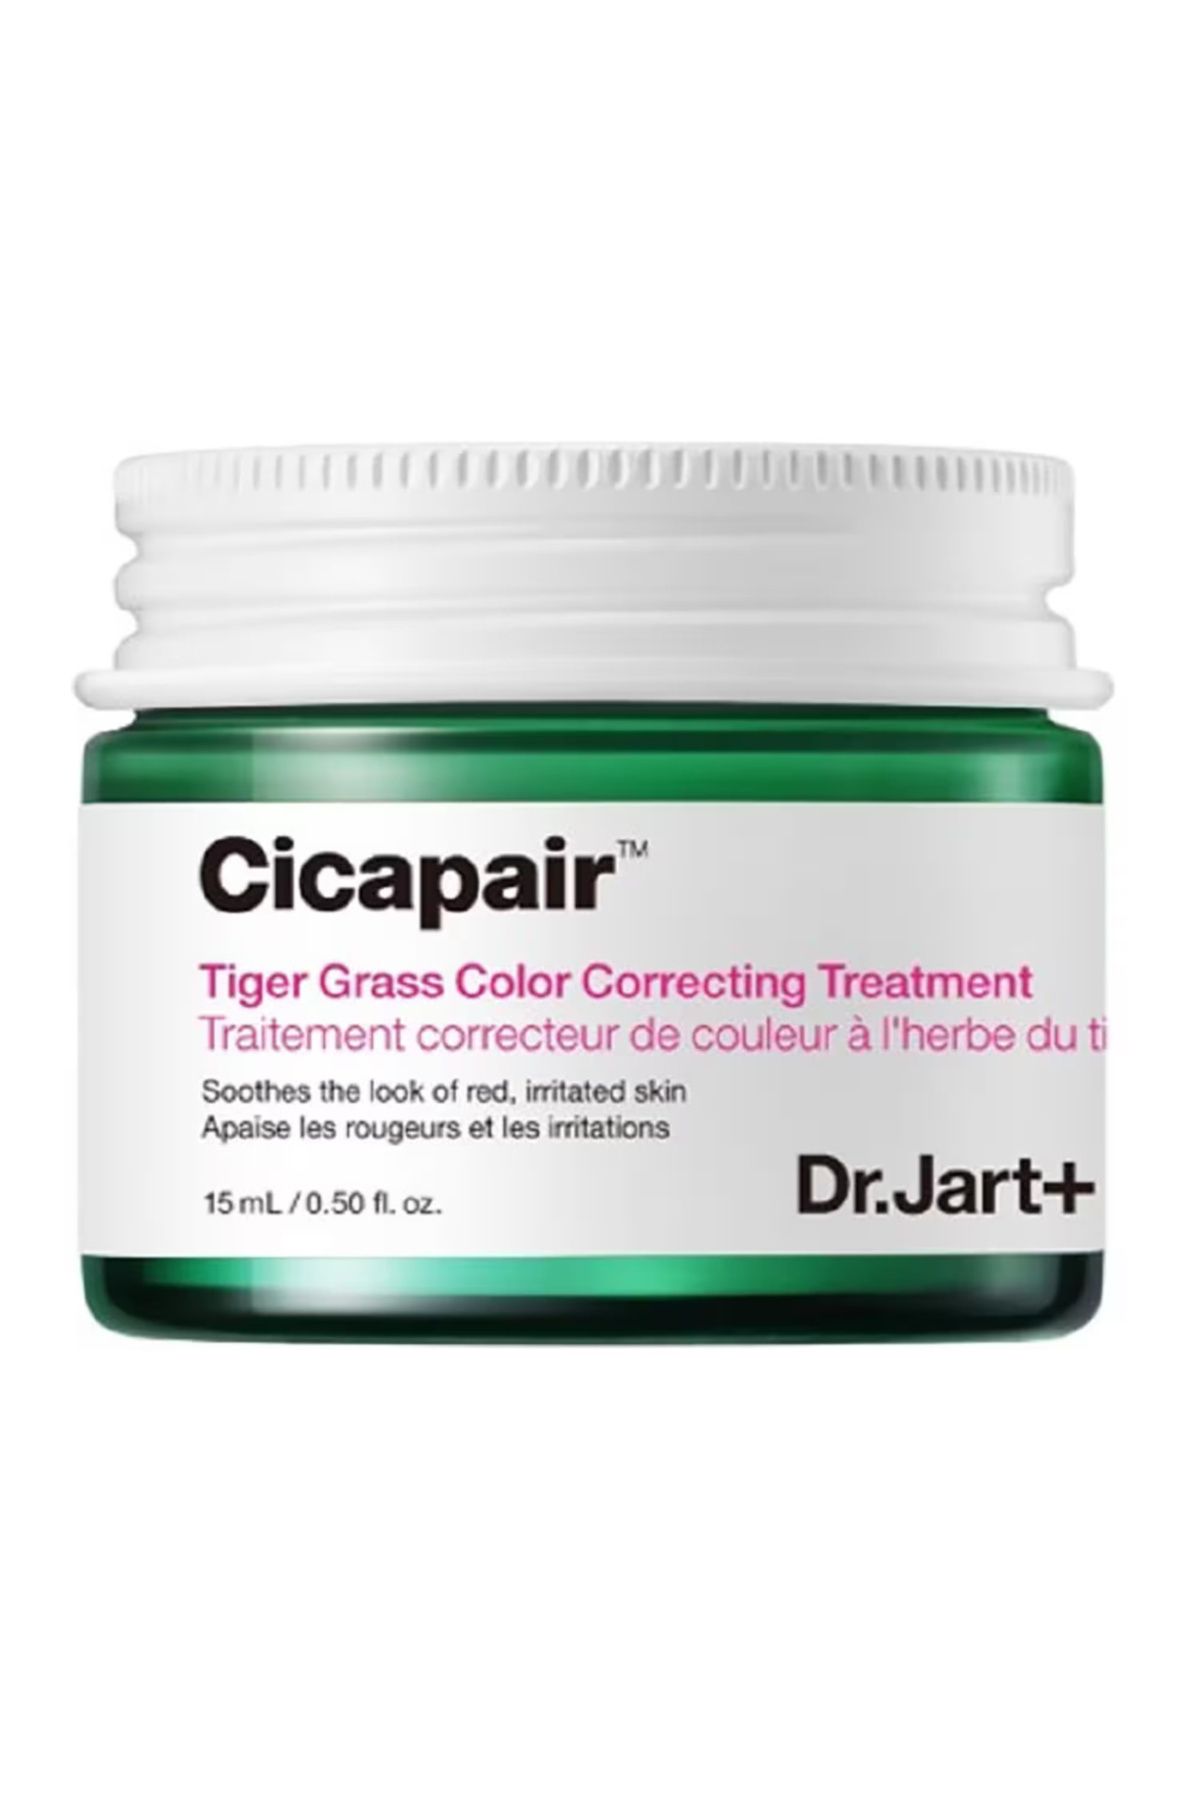 Dr.Jart Cicapair Tiger Grass Color Correcting Treatment - Cilt Tonu Eşitleyici Bakım-15 ml